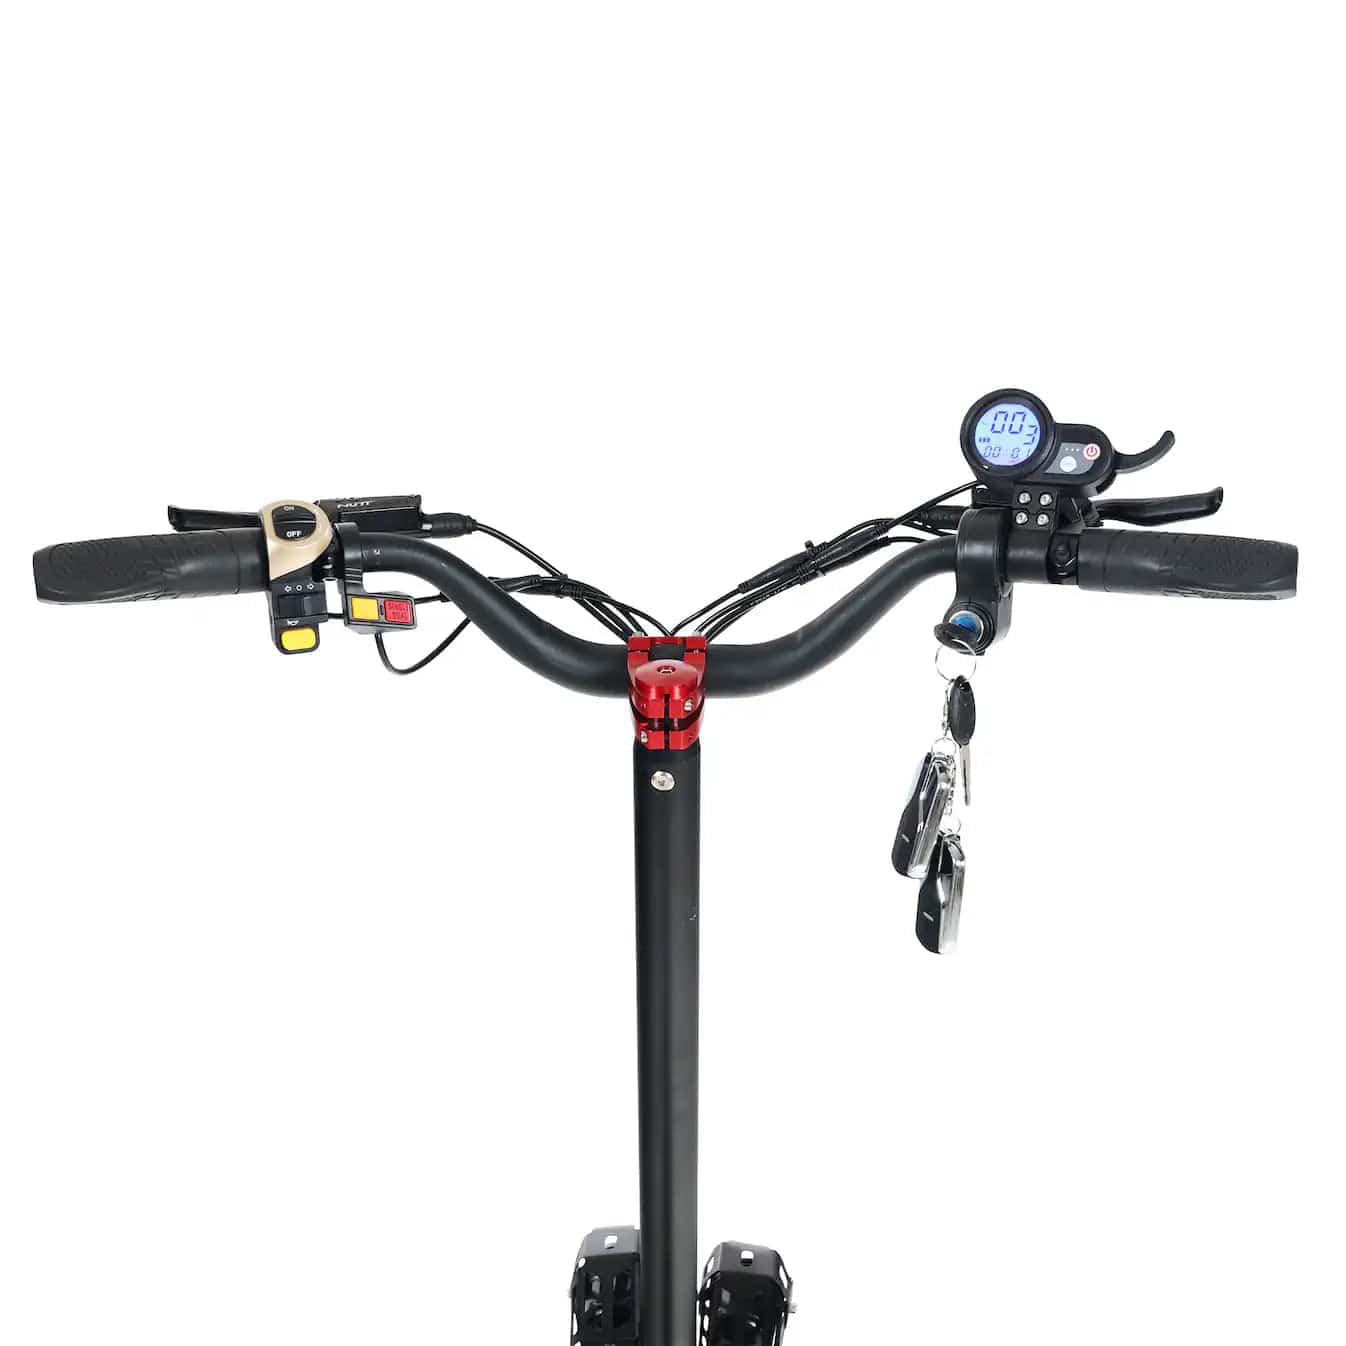 Wheely - Spyder | Vuxen elsparkcykel / elscooter styre. 70km/h på nolltid med räckvidd upp till 80km | Wheely Shop